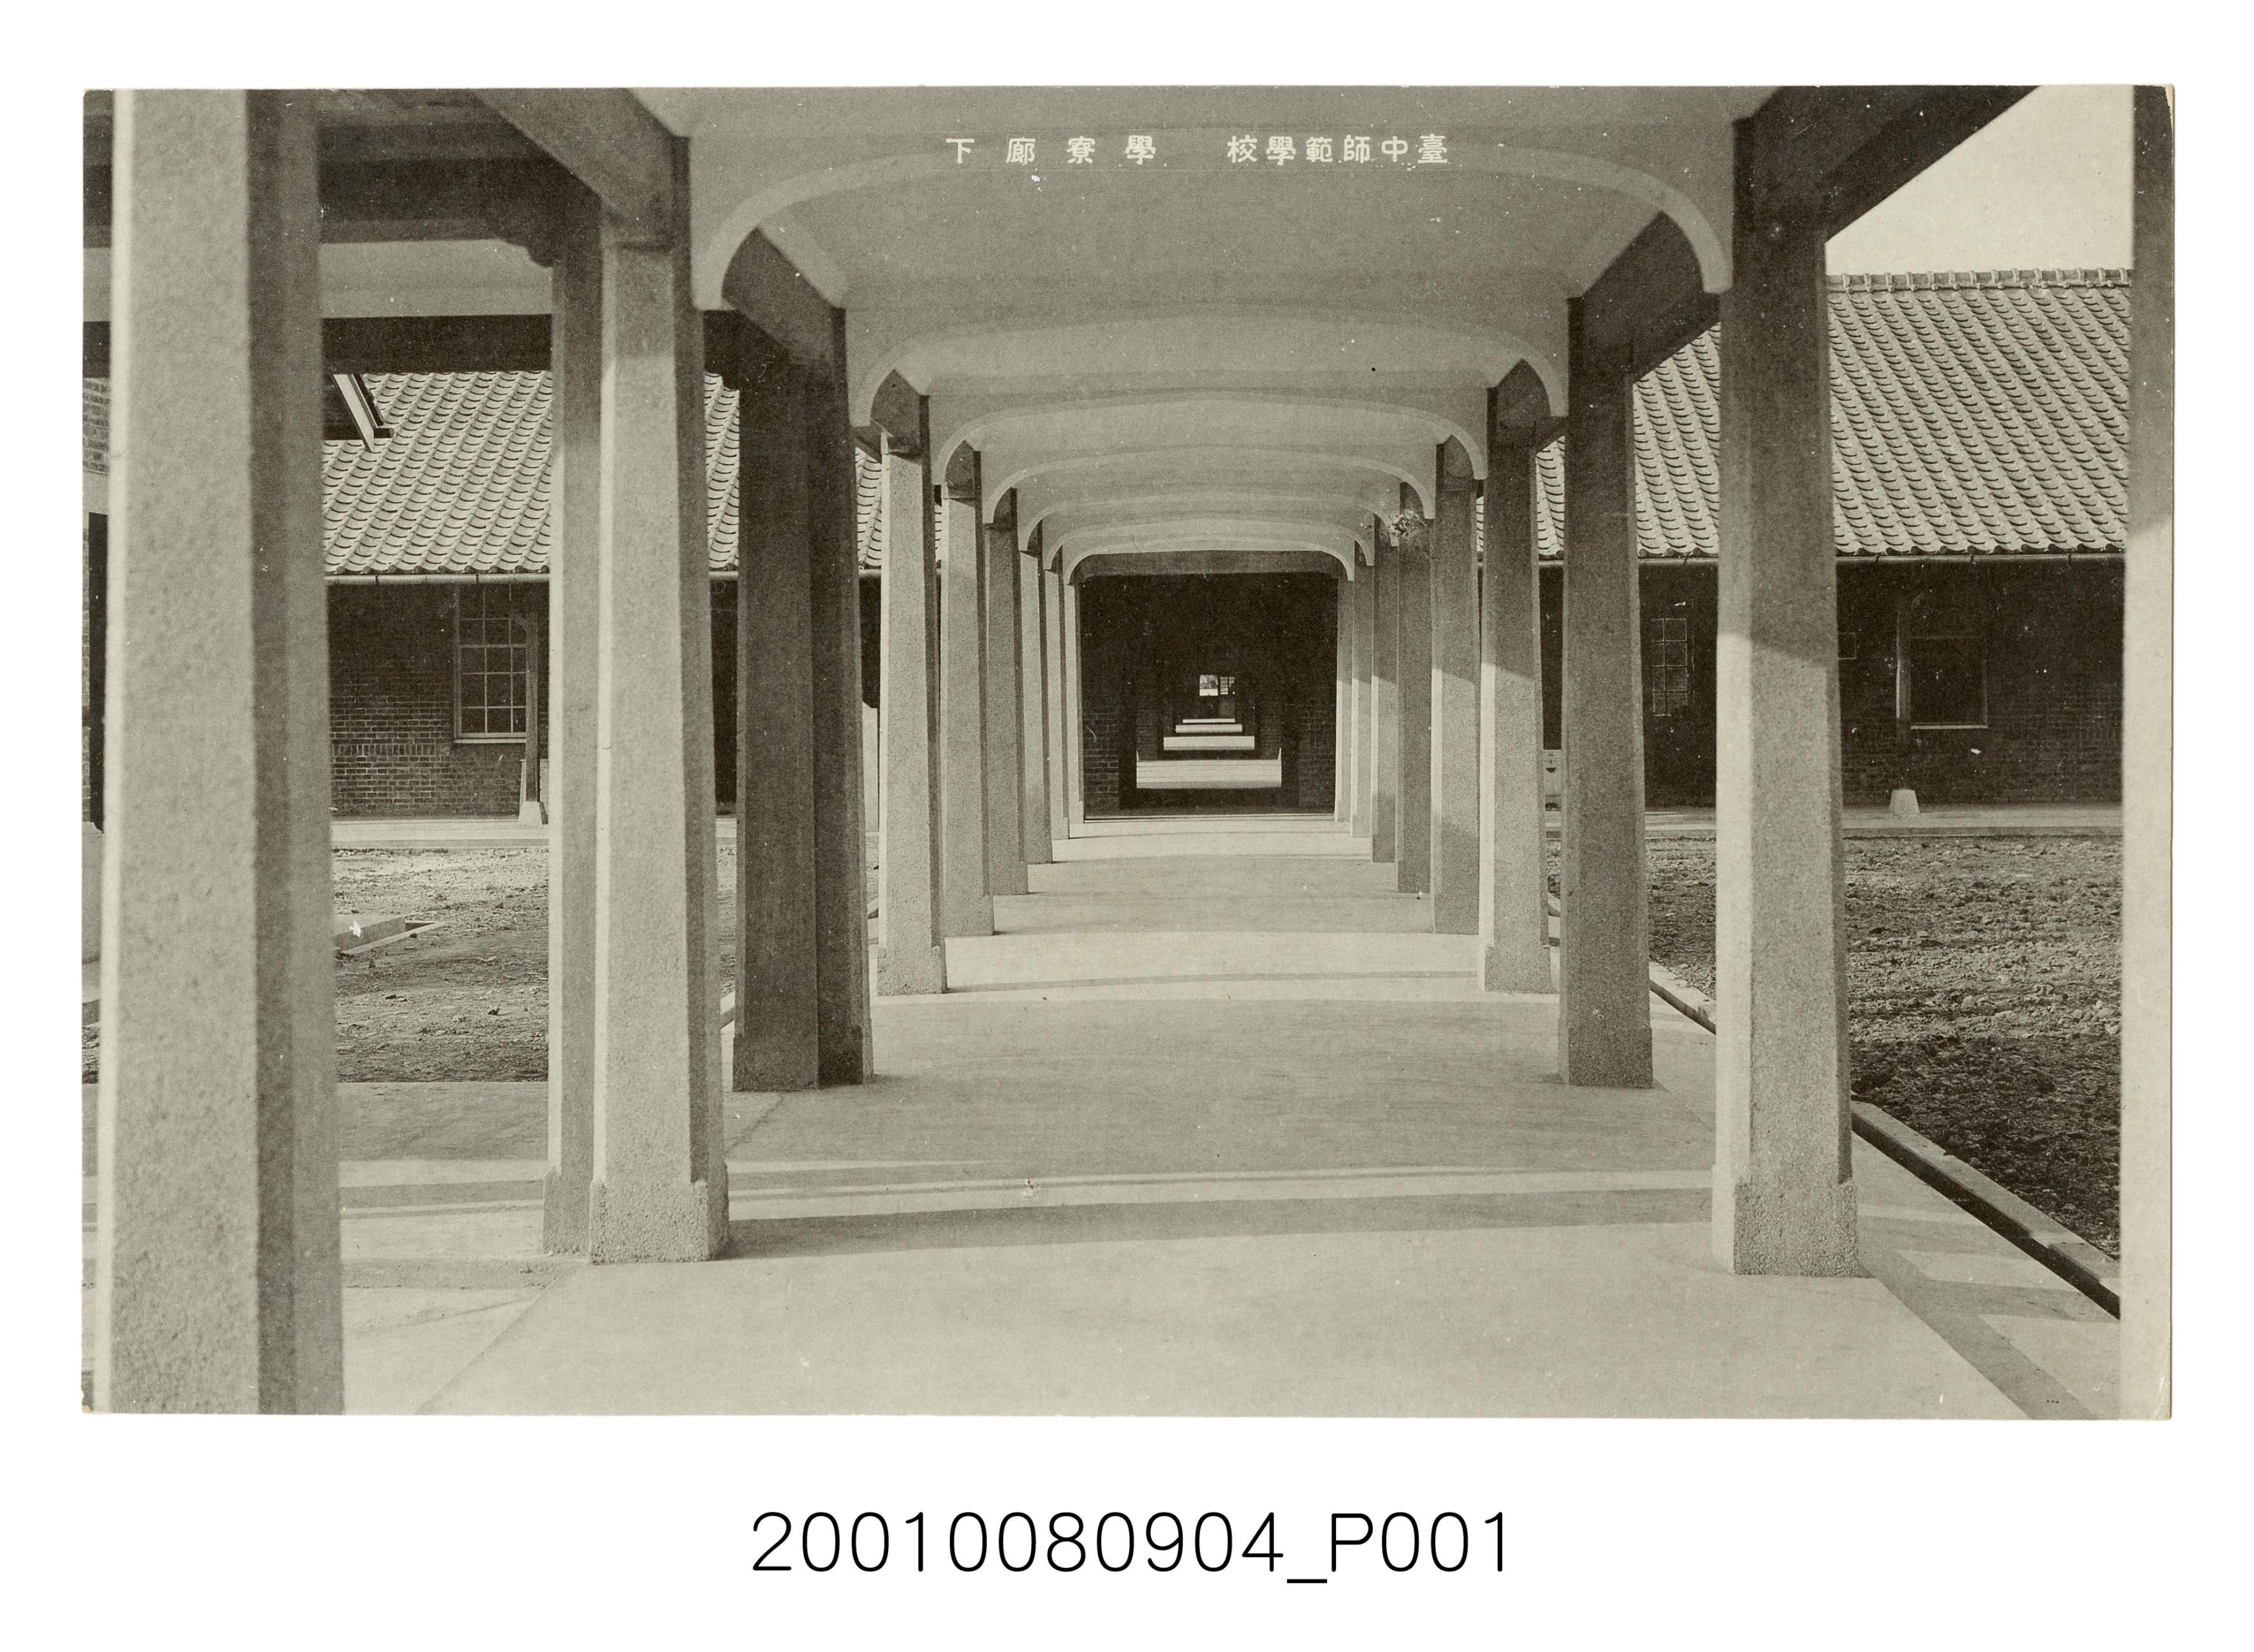 臺中師範學校學生宿舍走廊 (共2張)